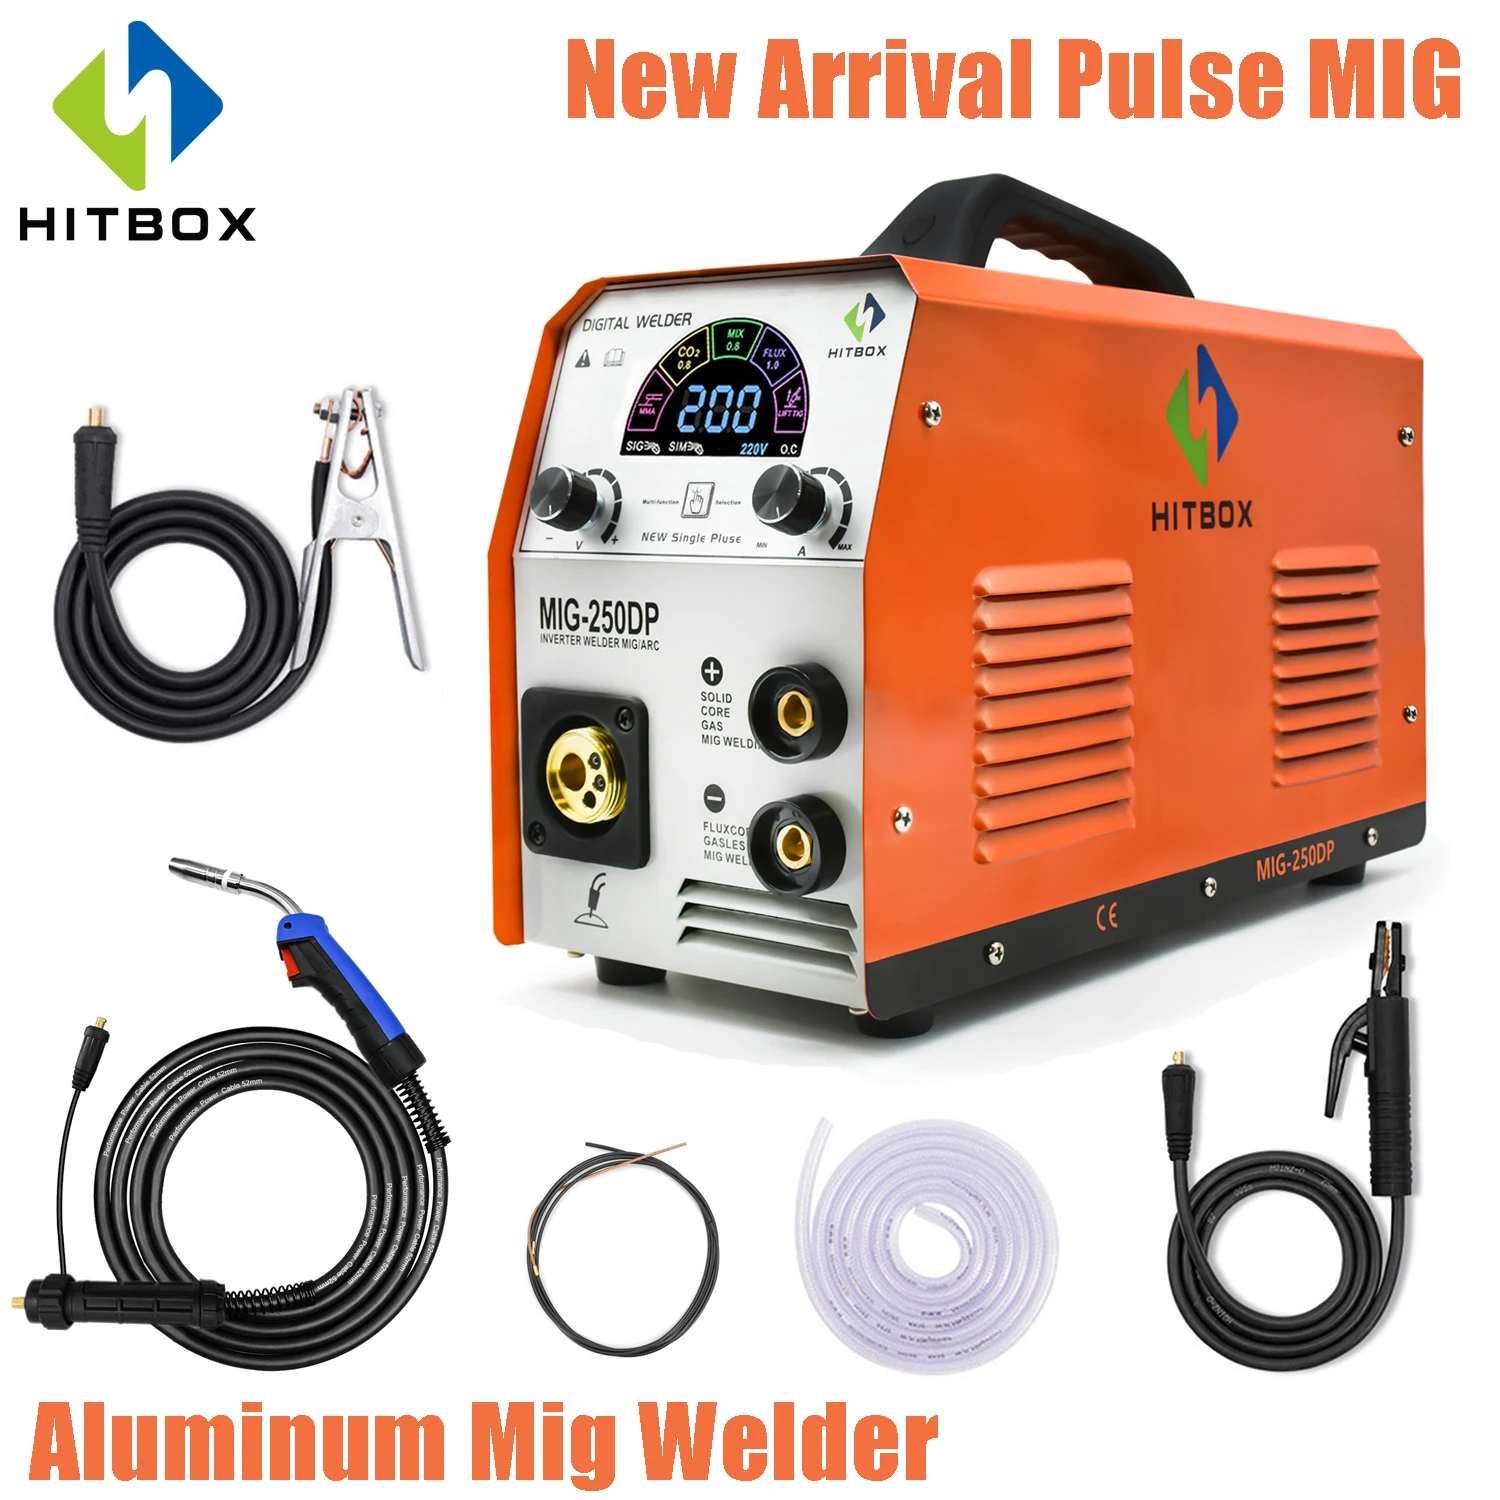 HITBOX полуавтоматическая Алюминий сварочный аппарат Mig сварщик MIG250DP 220V импульс 3 в 1